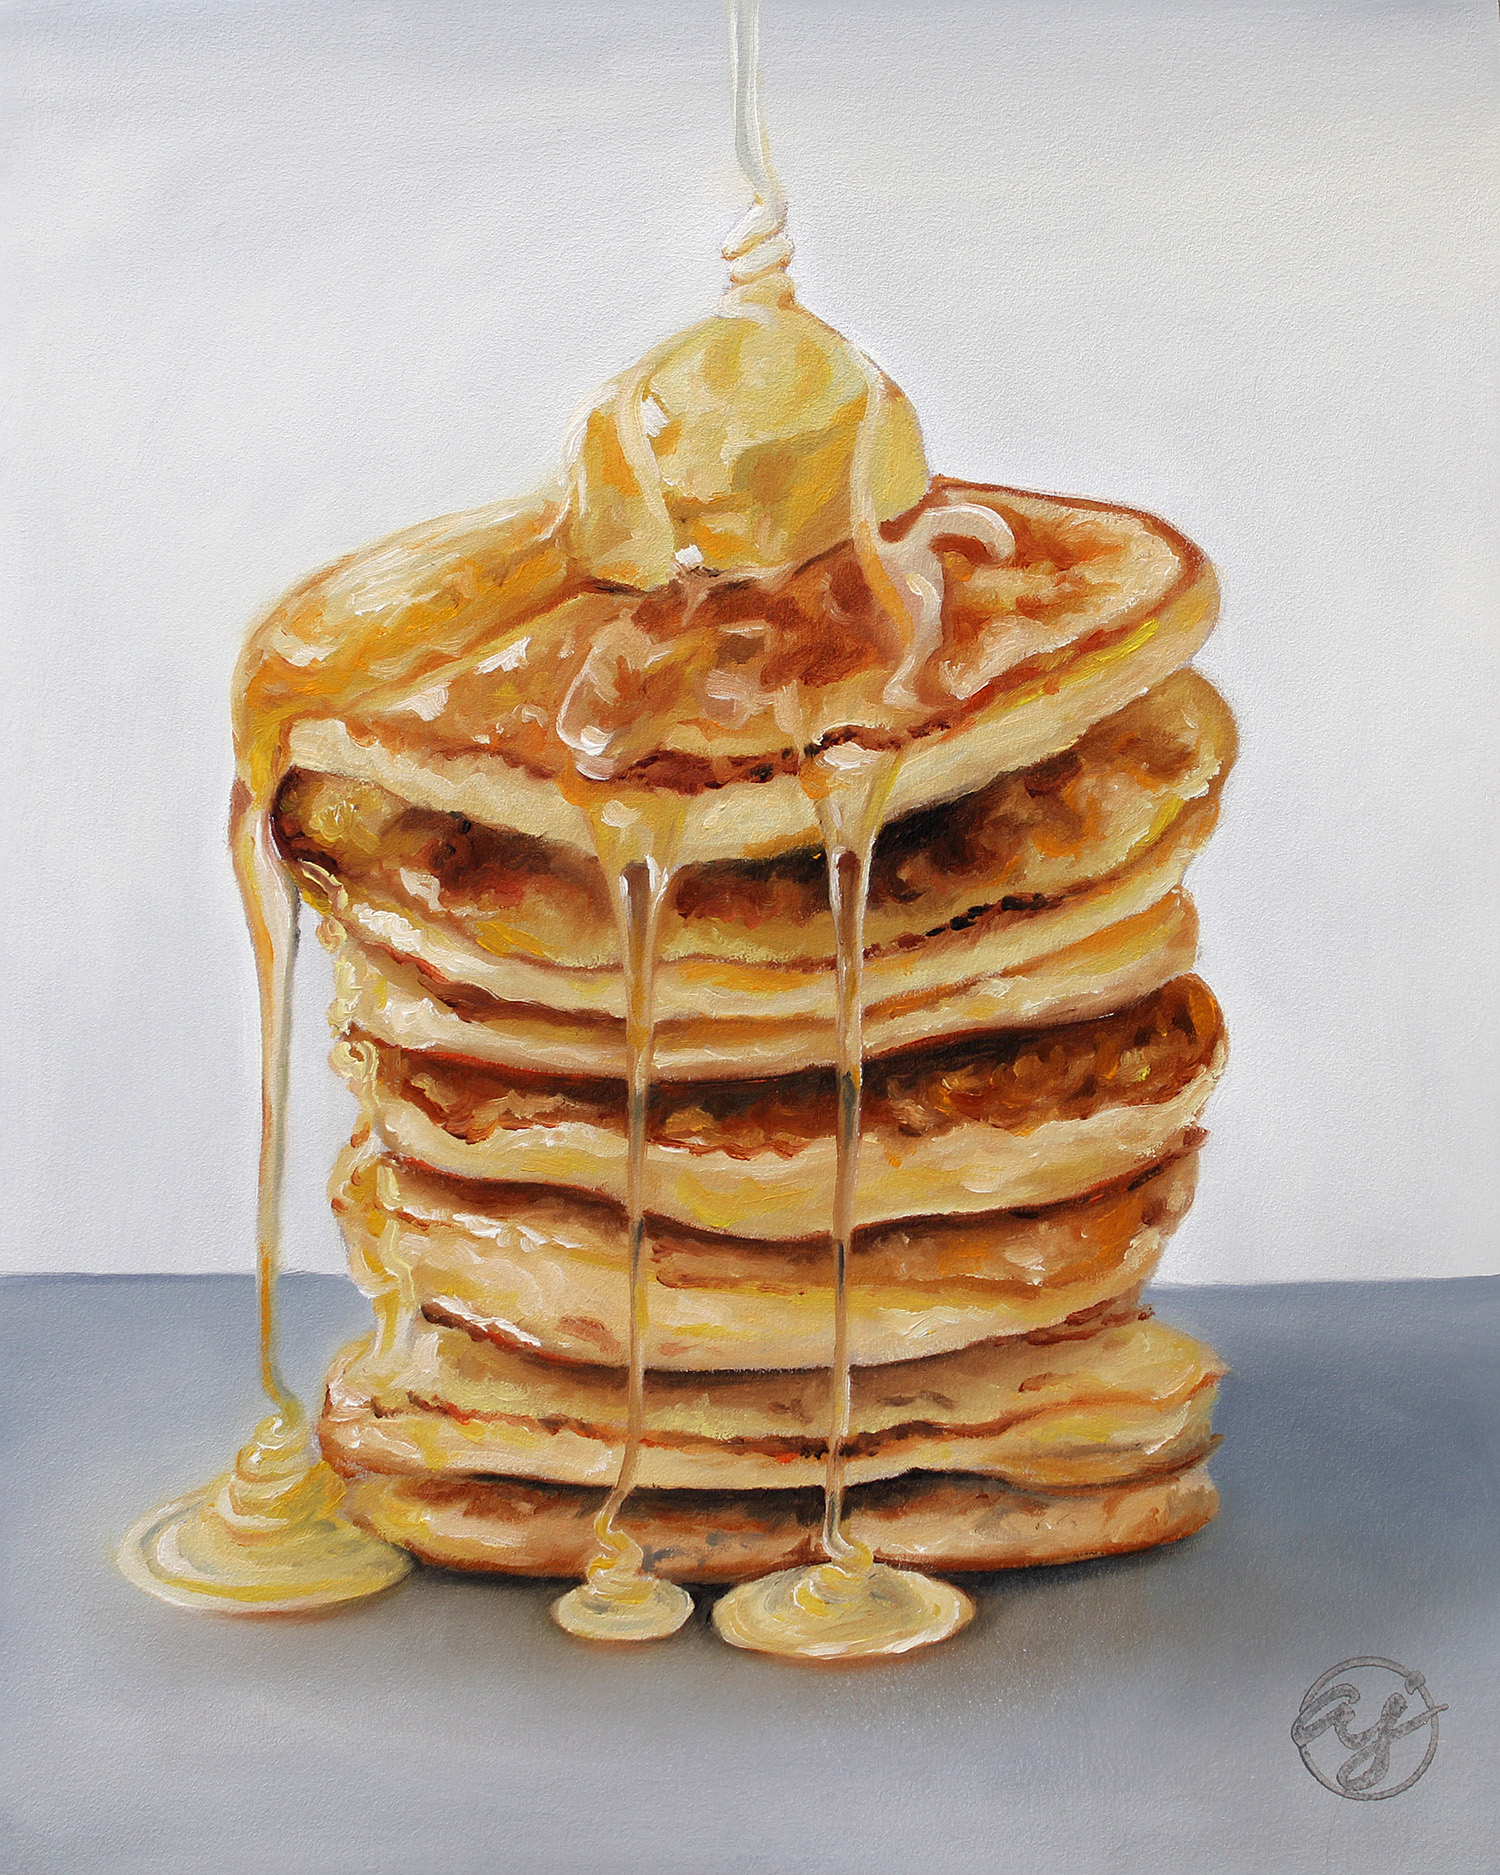 "Pancakes" 8x10 Original Oil Painting by Abra Johnson